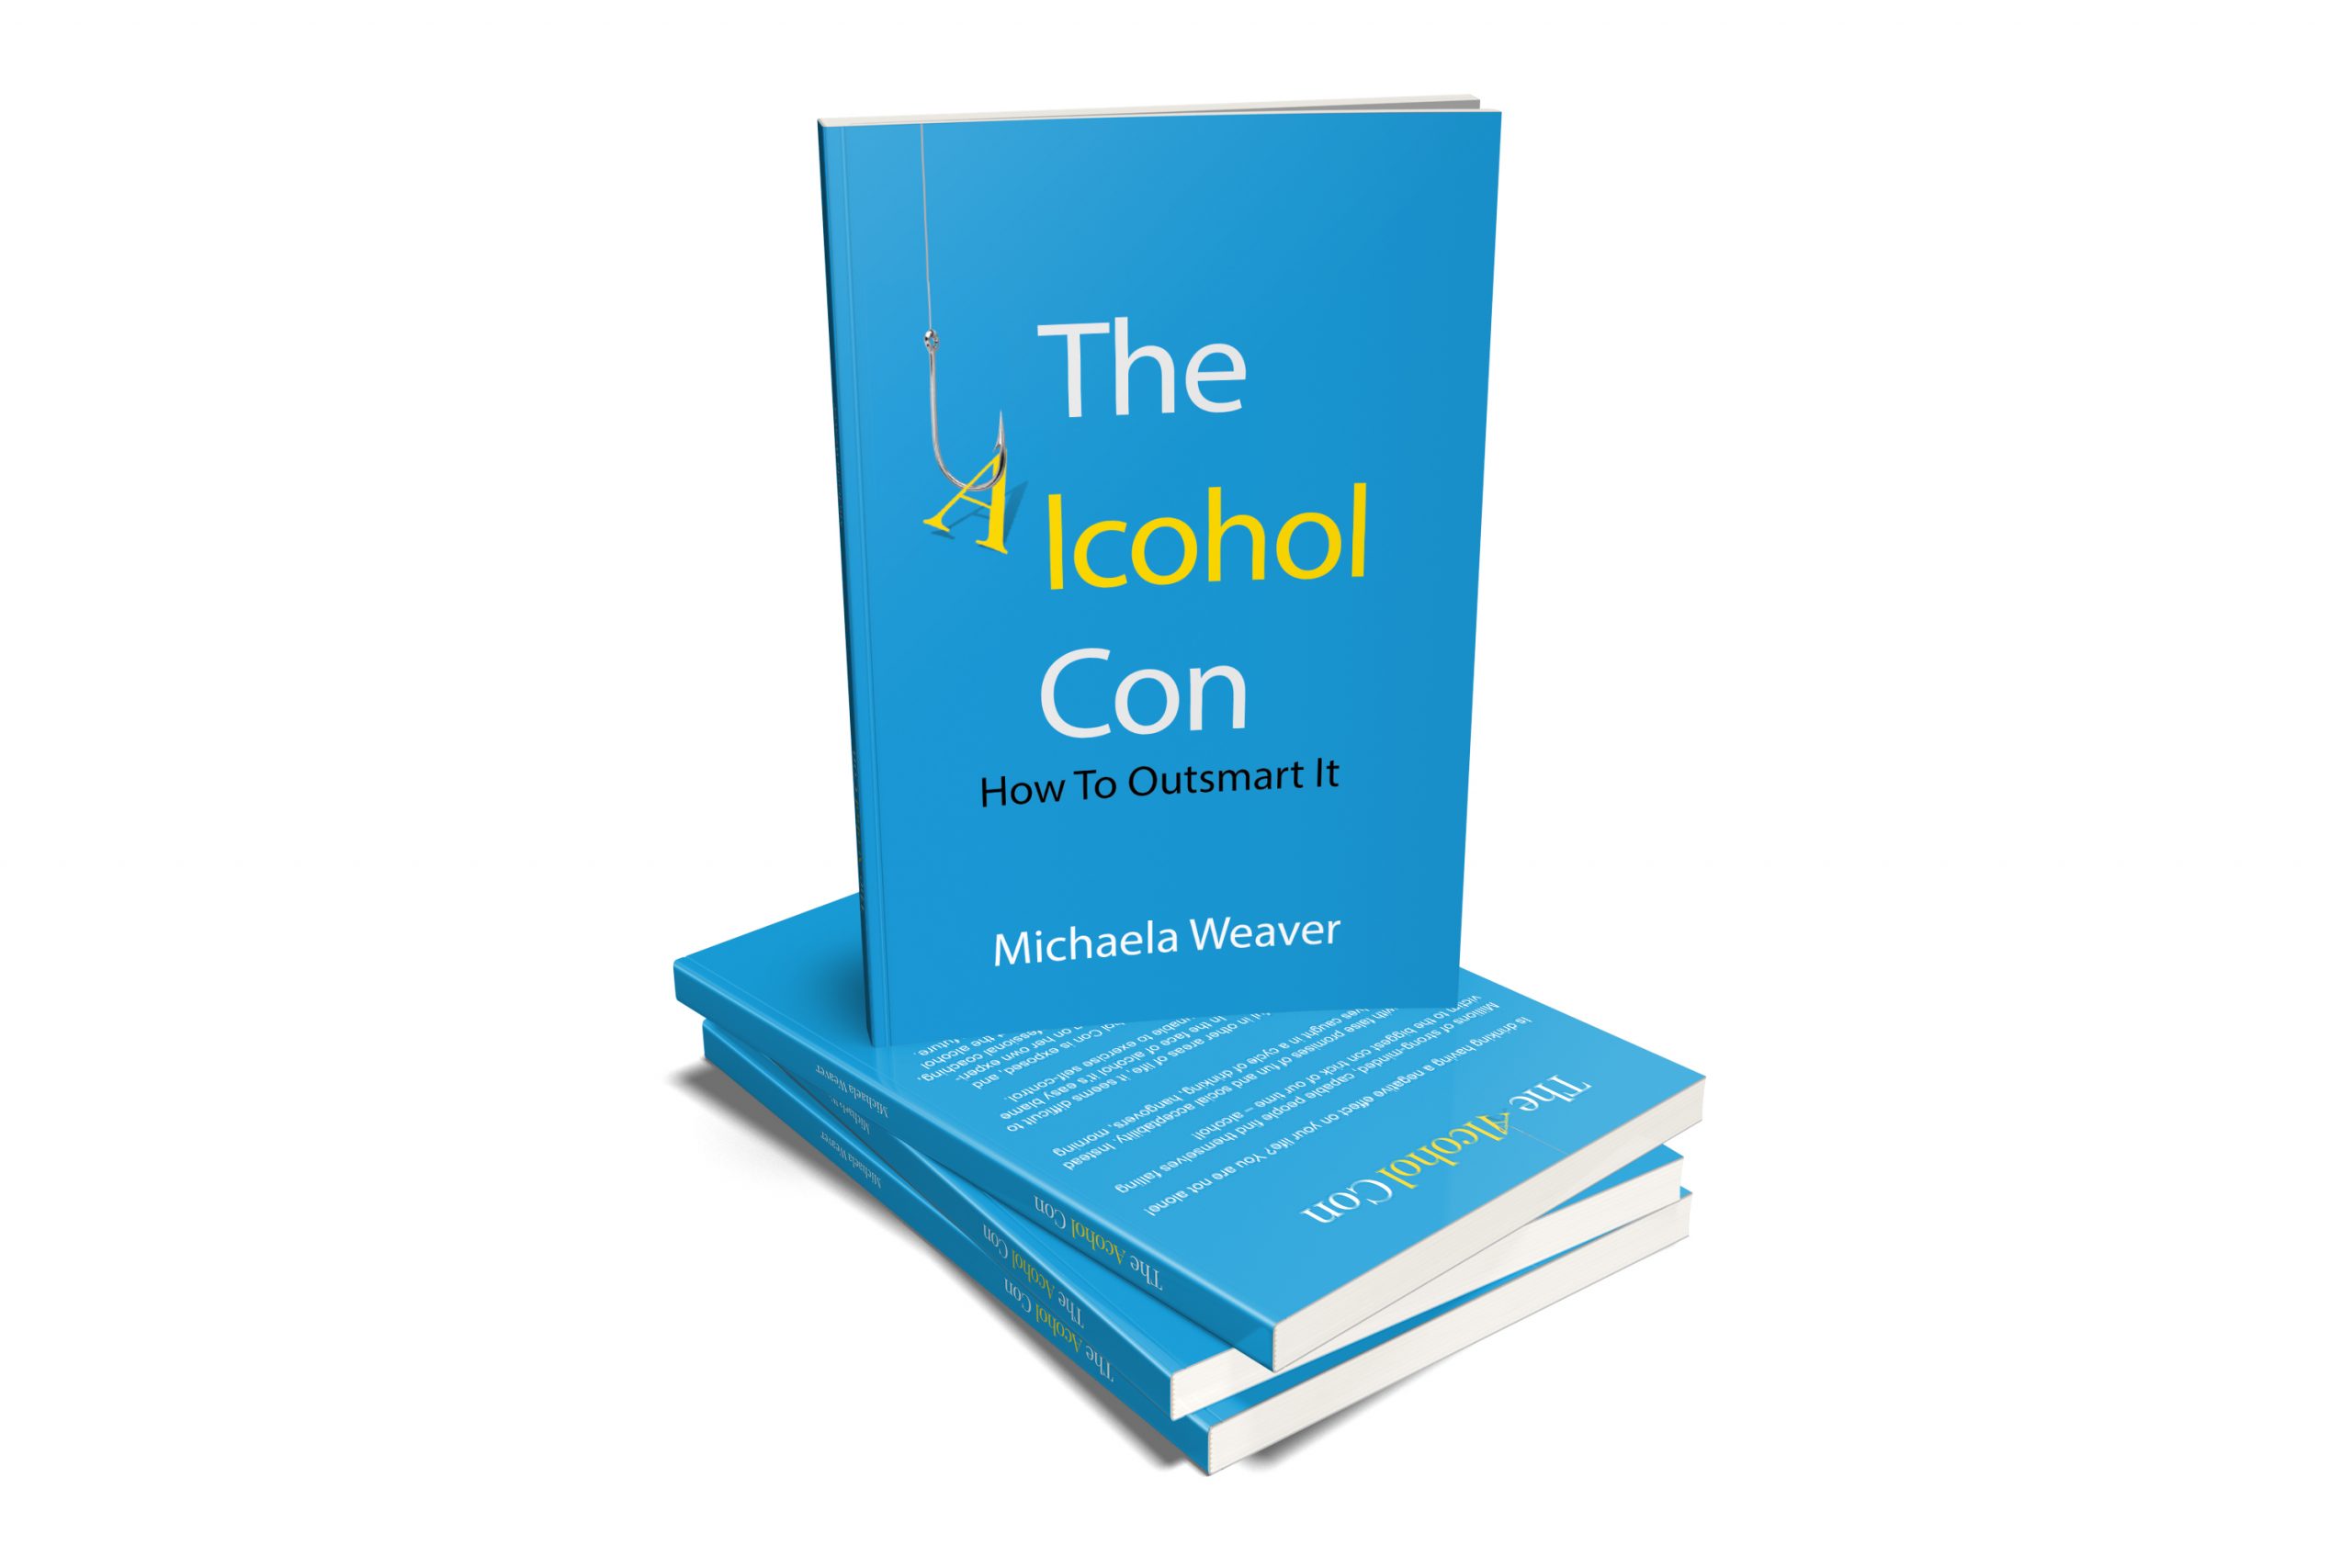 The Alcohol Con